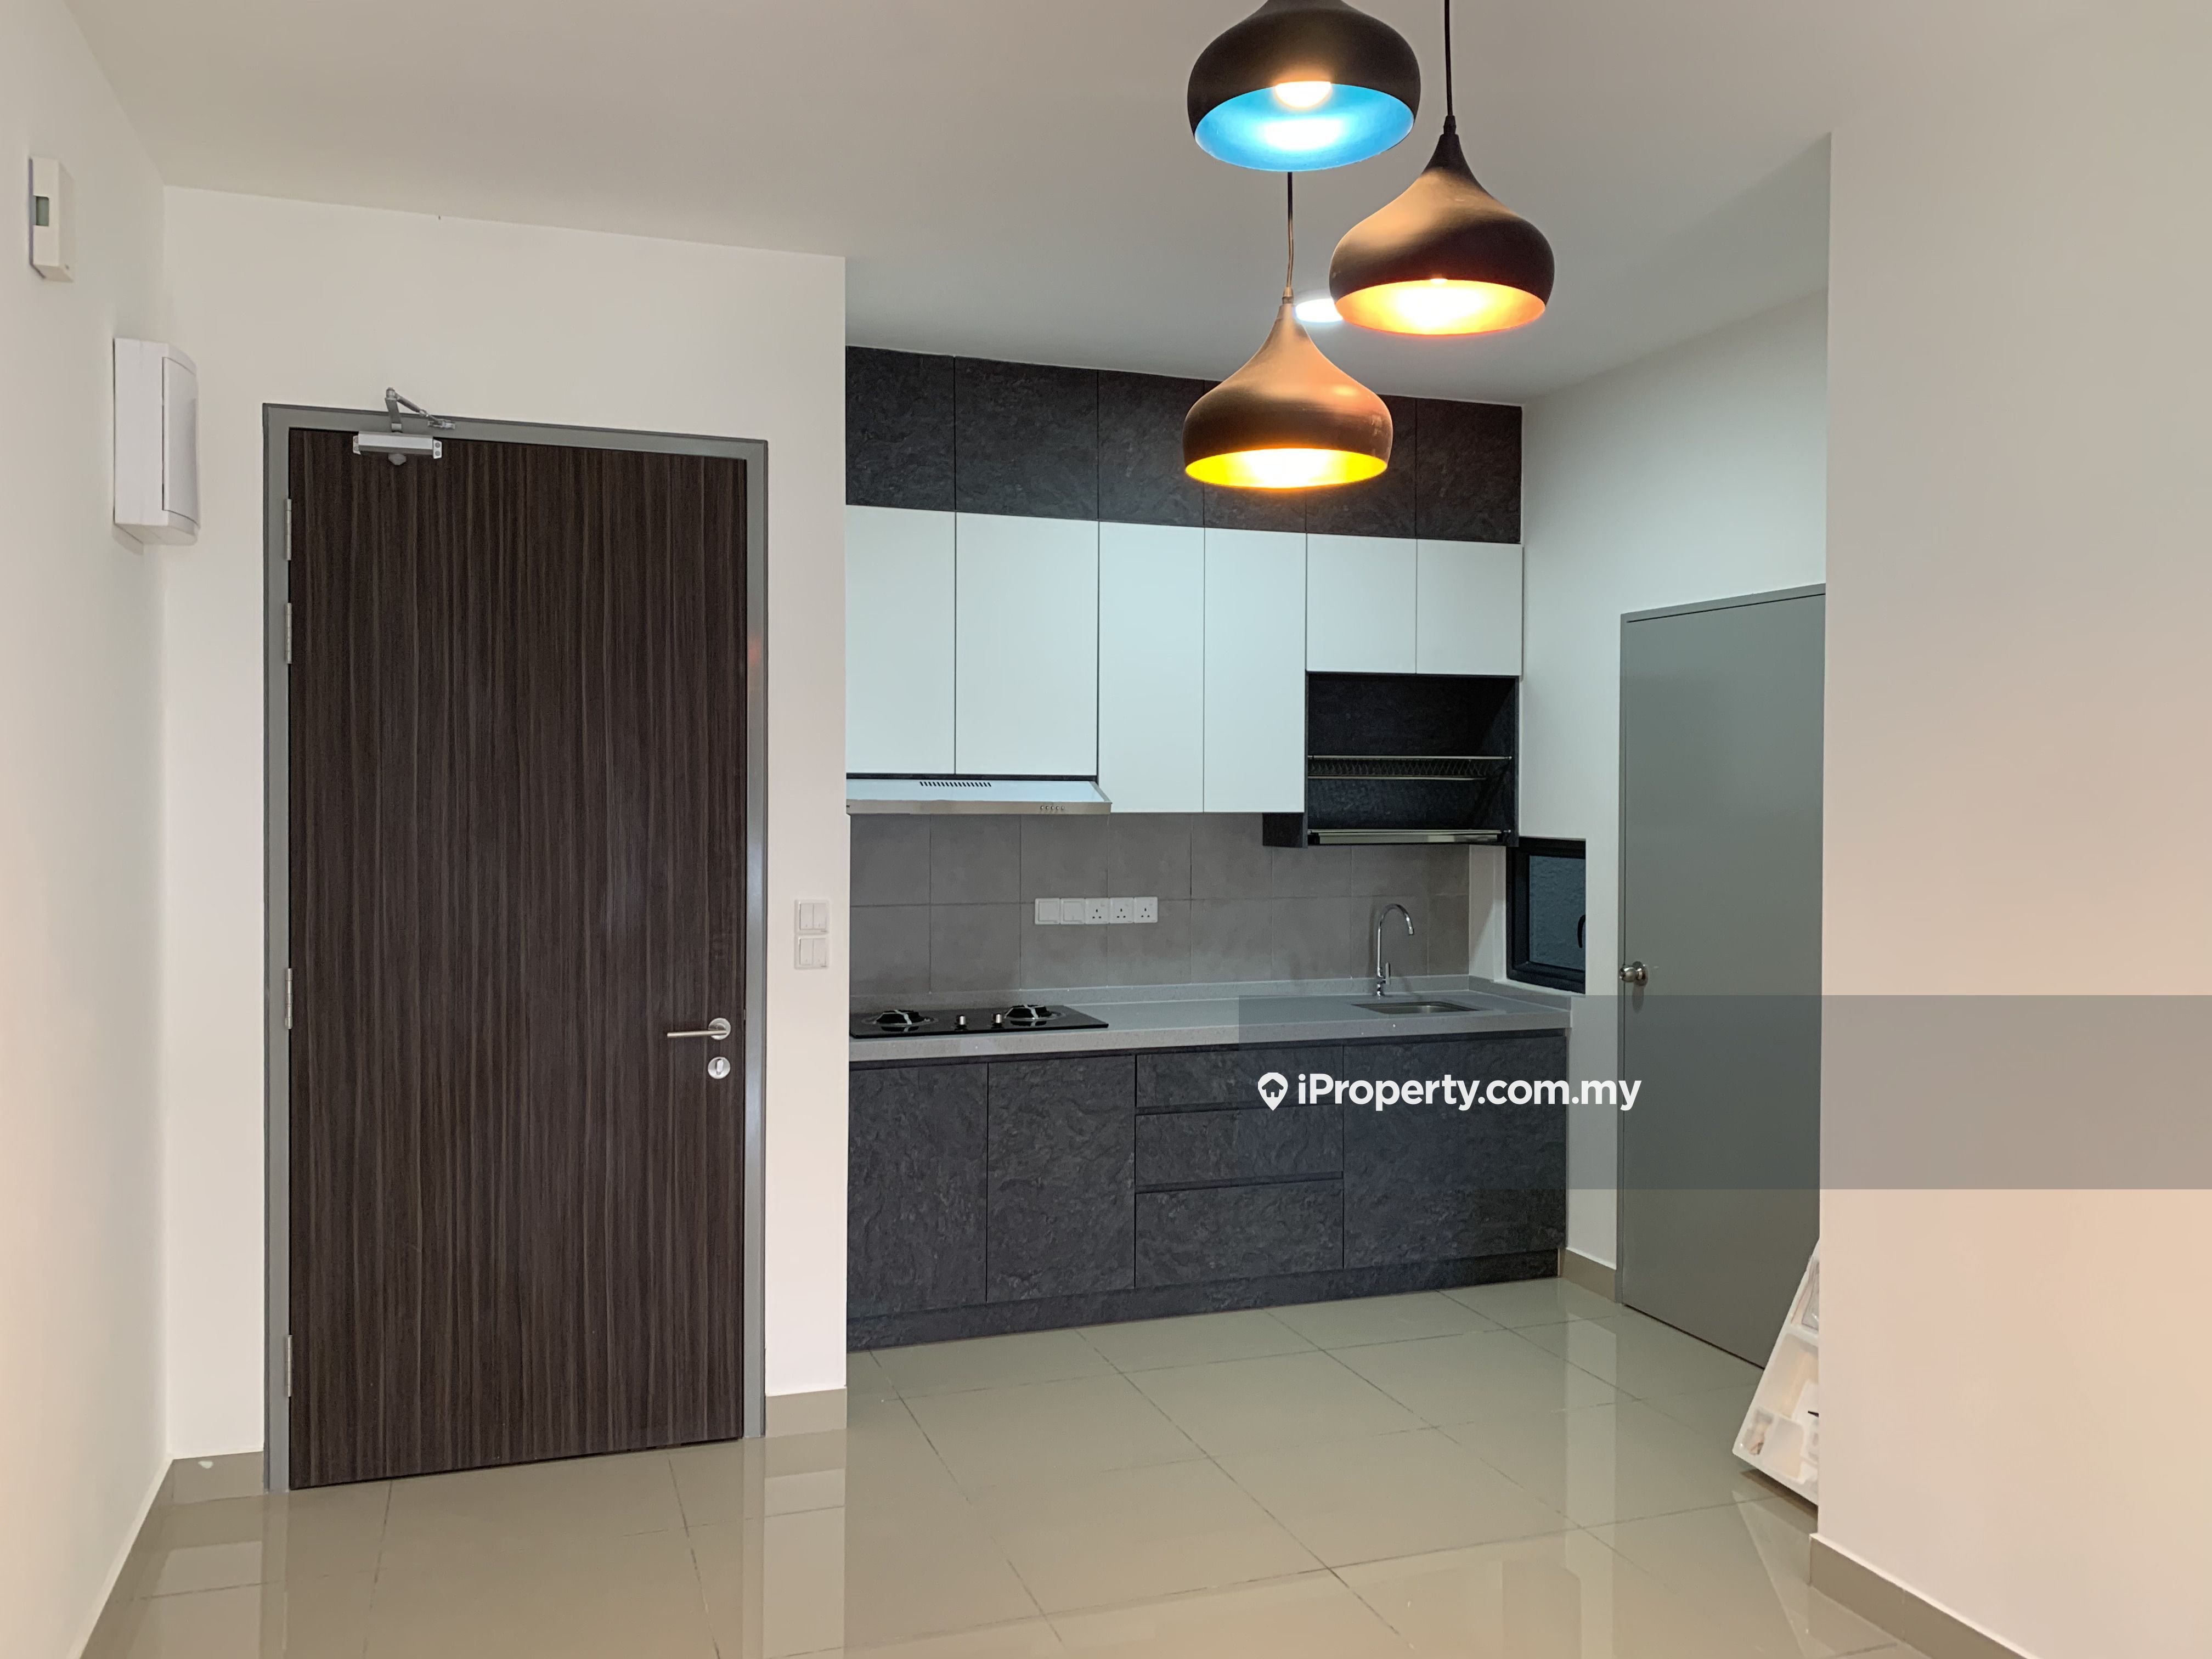 M Vertica Intermediate Condominium 3 bedrooms for rent in Cheras, Kuala ...